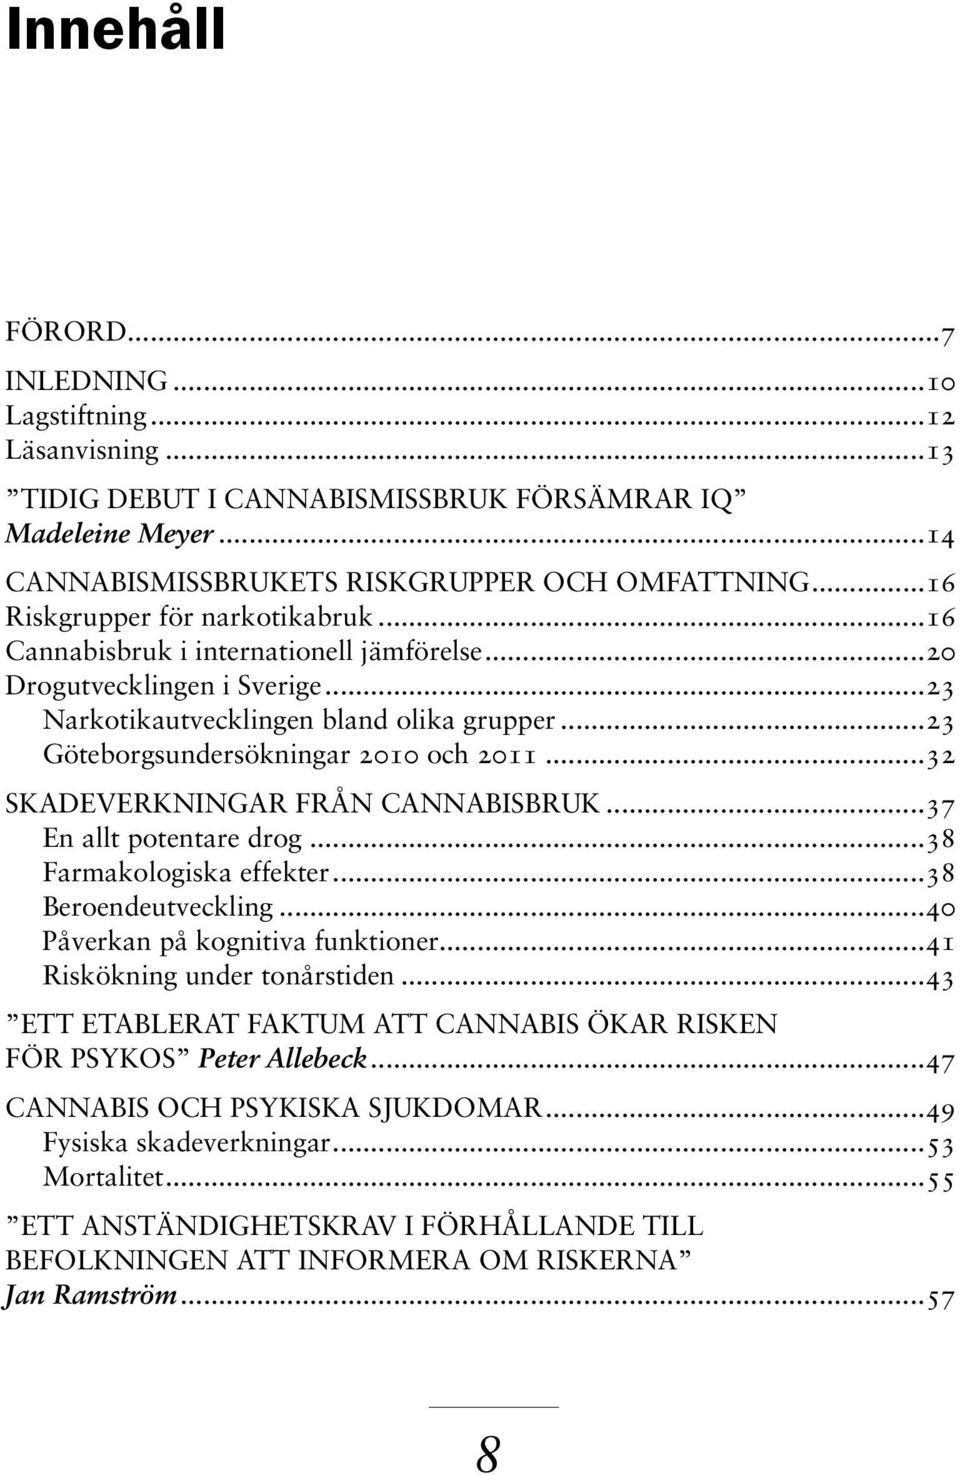 ..23 Göteborgsundersökningar 2010 och 2011...32 Skadeverkningar från cannabisbruk...37 En allt potentare drog...38 Farmakologiska effekter...38 Beroendeutveckling...40 Påverkan på kognitiva funktioner.